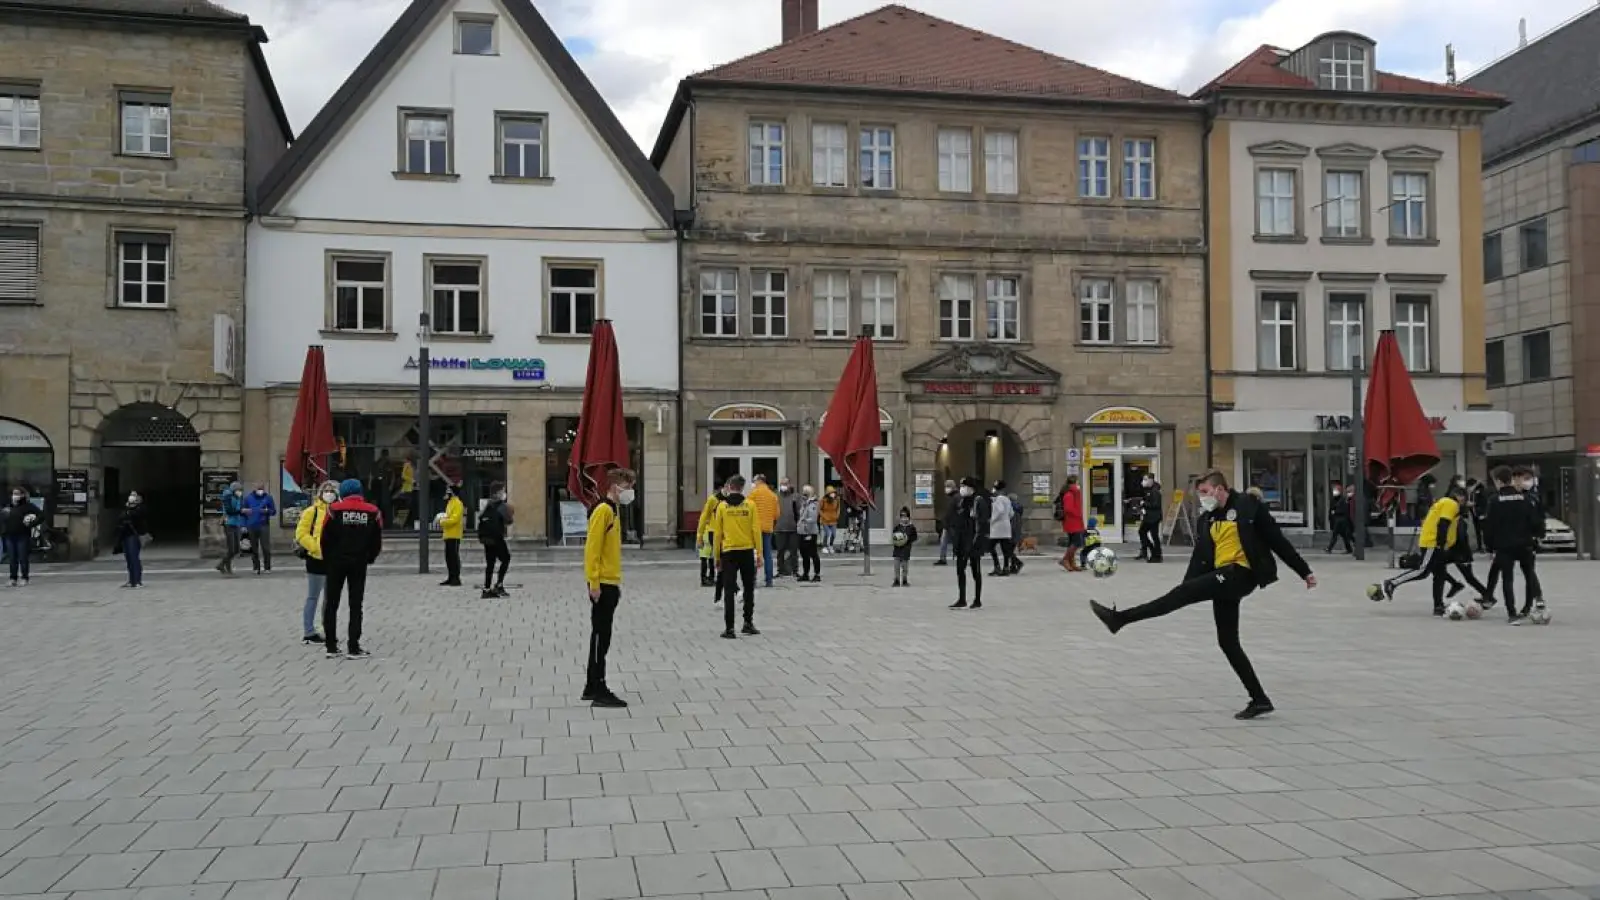 Kinder, Jugendliche und Eltern versammelten sich in Bayreuth, um ein Zeichen zu setzen. (Foto: Mirko Strässer)